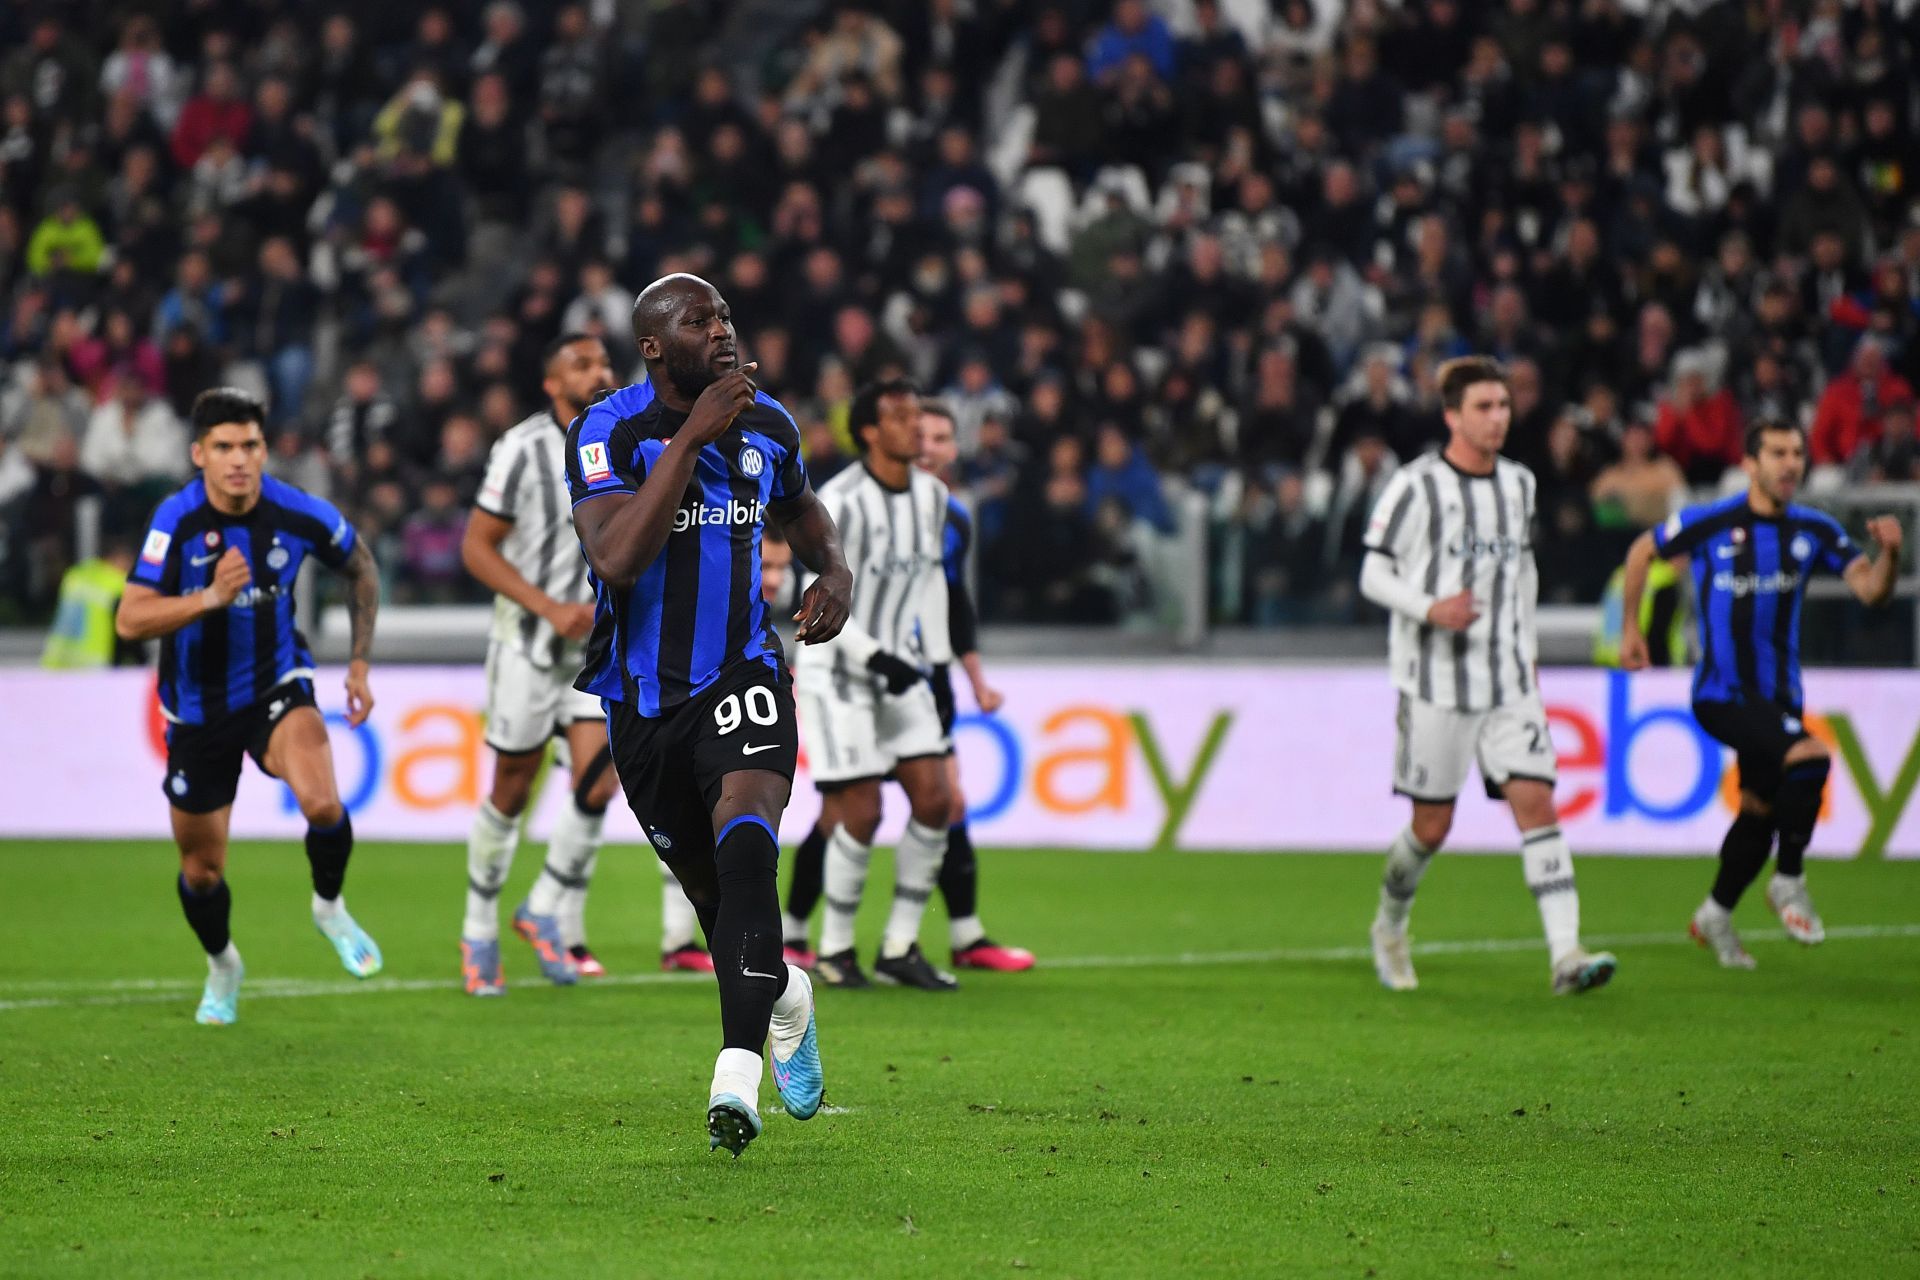 Juventus FC v FC Internazionale - Coppa Italia Semi Final